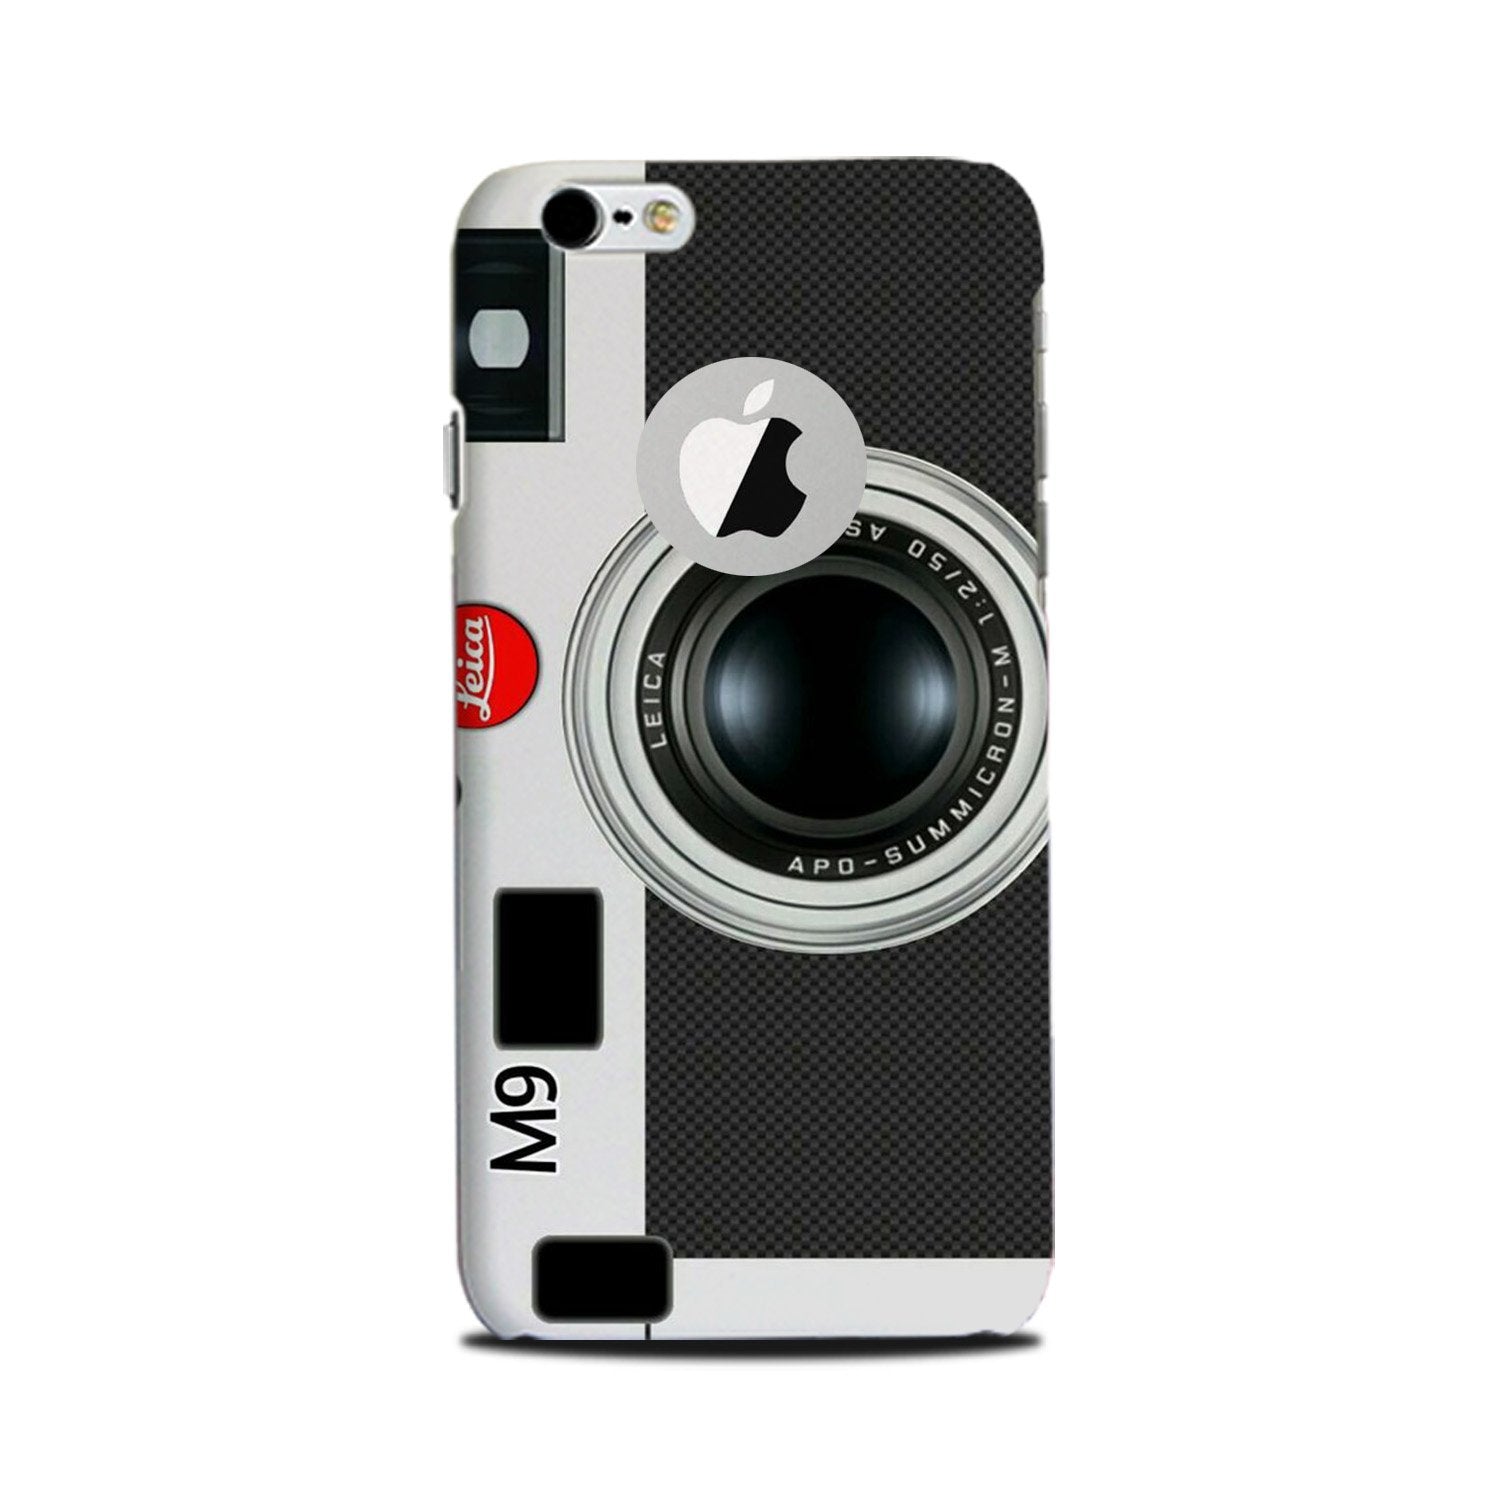 Camera Case for iPhone 6 Plus / 6s Plus logo cut  (Design No. 257)